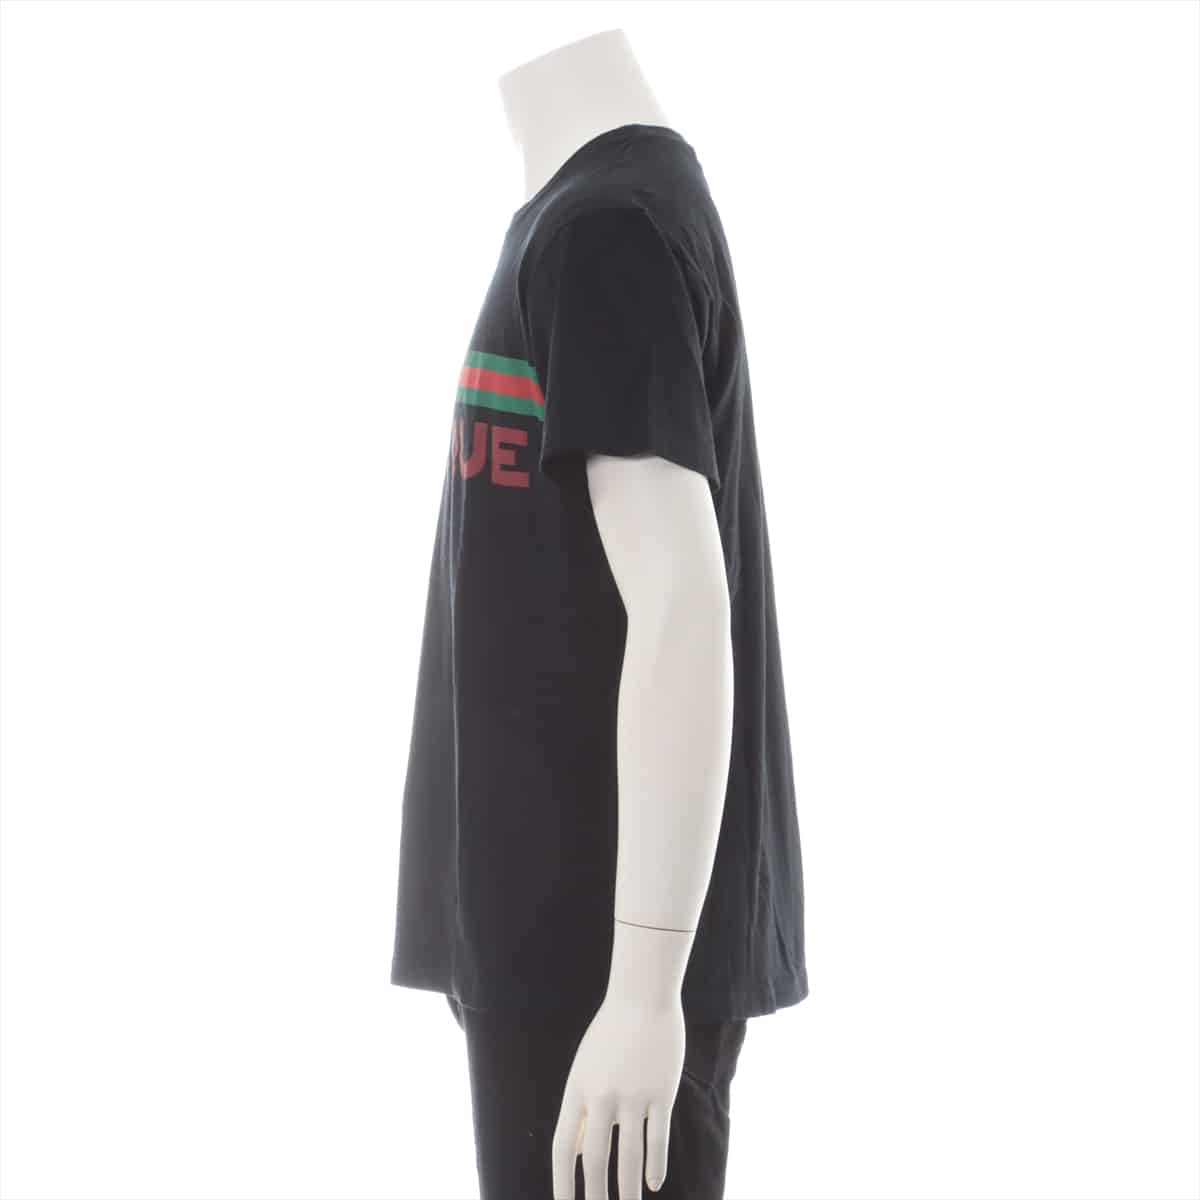 グッチ ヴィンテージロゴ コットン Tシャツ XS レディース ブラック